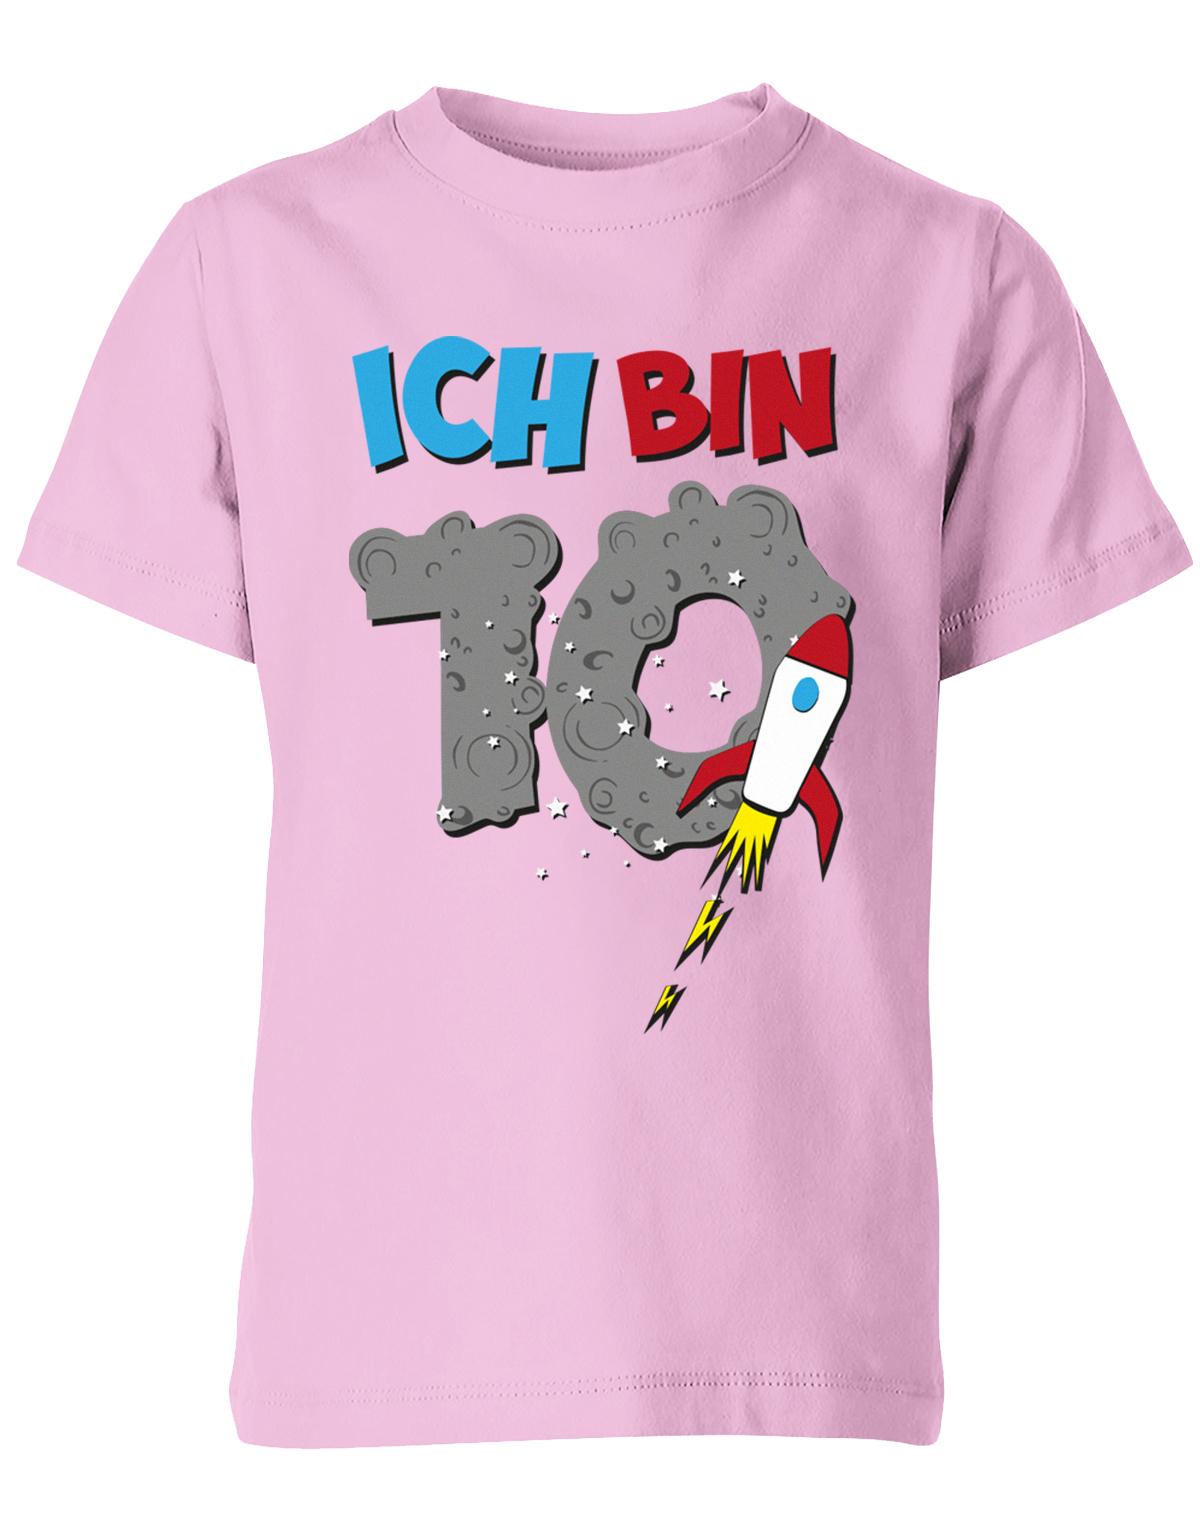 ich-bin-10-weltraum-rakete-planet-geburtstag-kinder-shirt-rosa